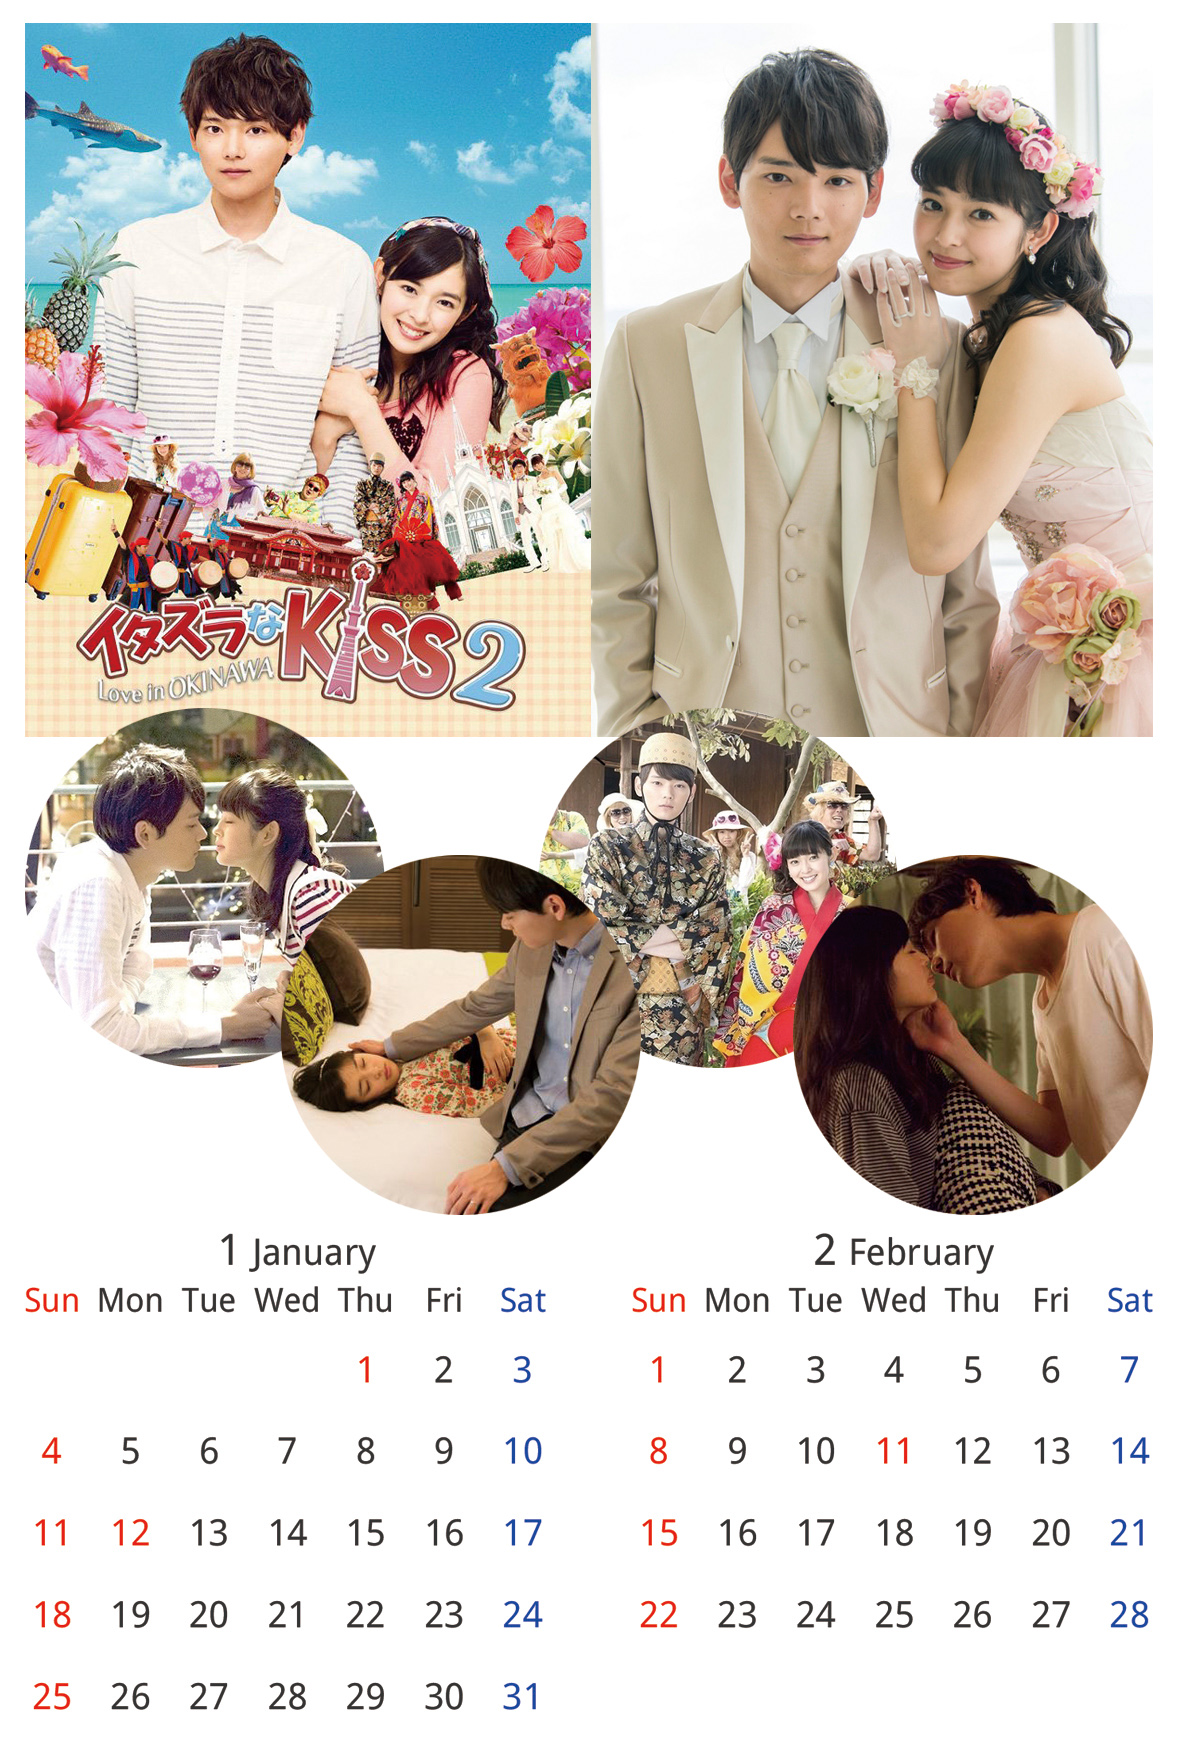 イタキスカレンダー15 2ヶ月カレンダー 日曜はじまり カレンダー 古川雄輝くんにお花を贈り隊